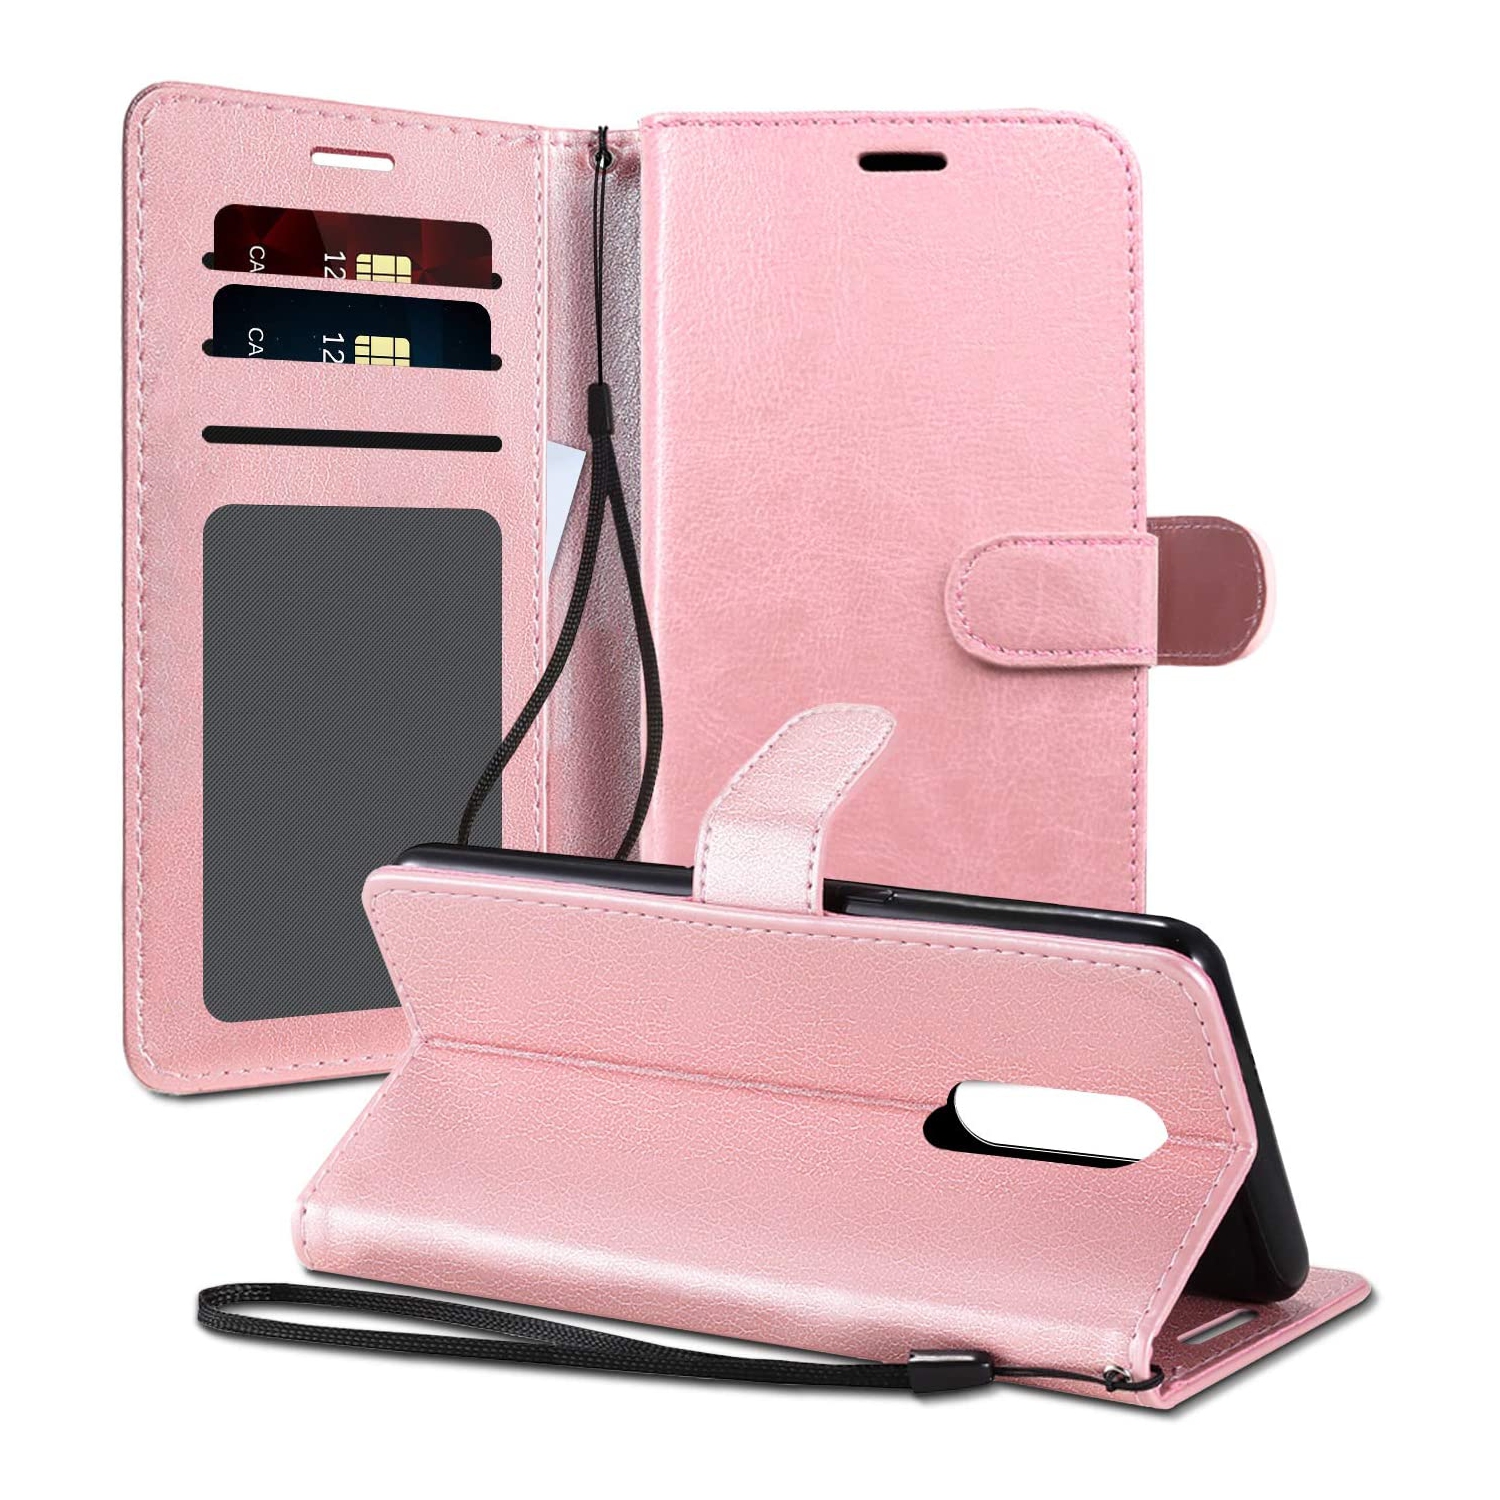 【CSmart】 Magnetic Card Slot Leather Folio Wallet Flip Case Cover for LG K30 2019, Rose Gold